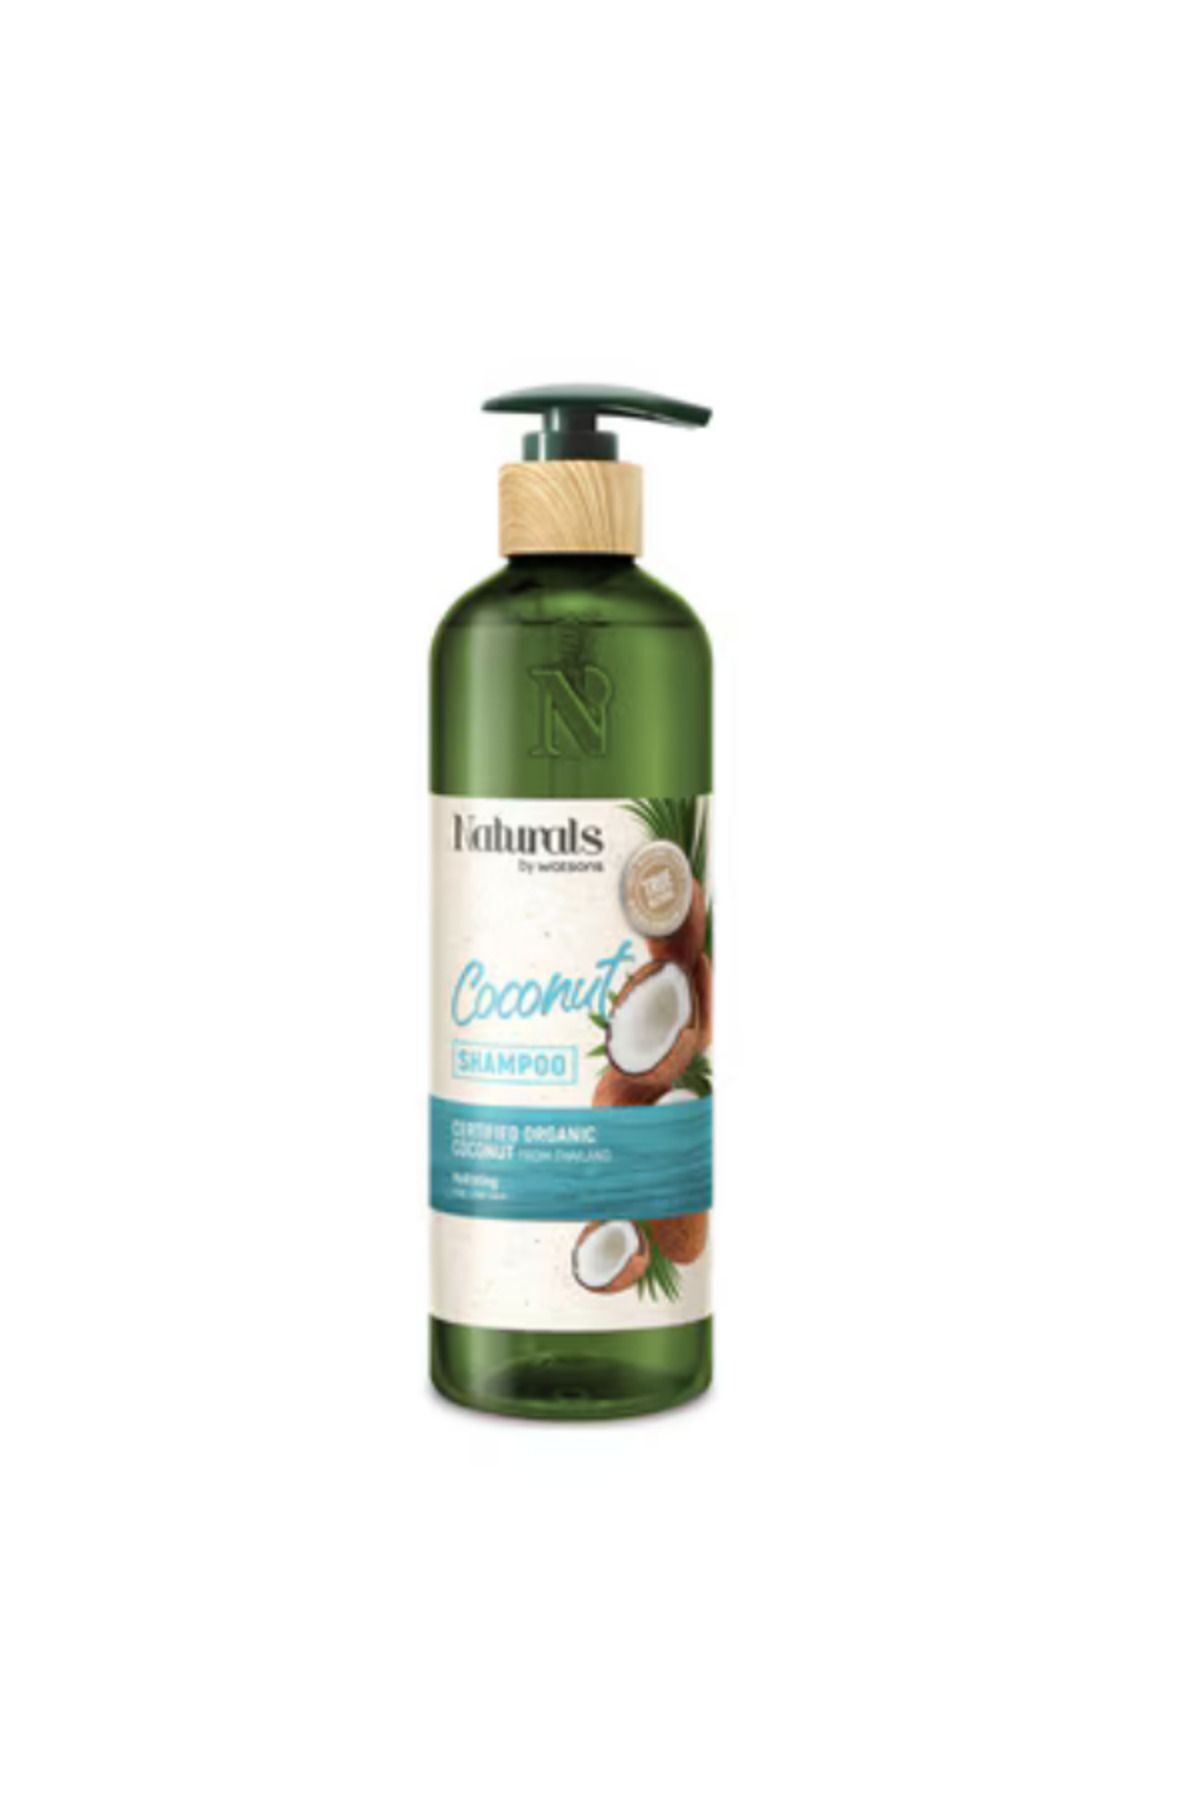 Naturals By Watsons Organik Şampuan Coconut 490 ml / Nemlendirici ve Güçlendirici Etki - Zayıf ve Güçsüz Saçlar İçin